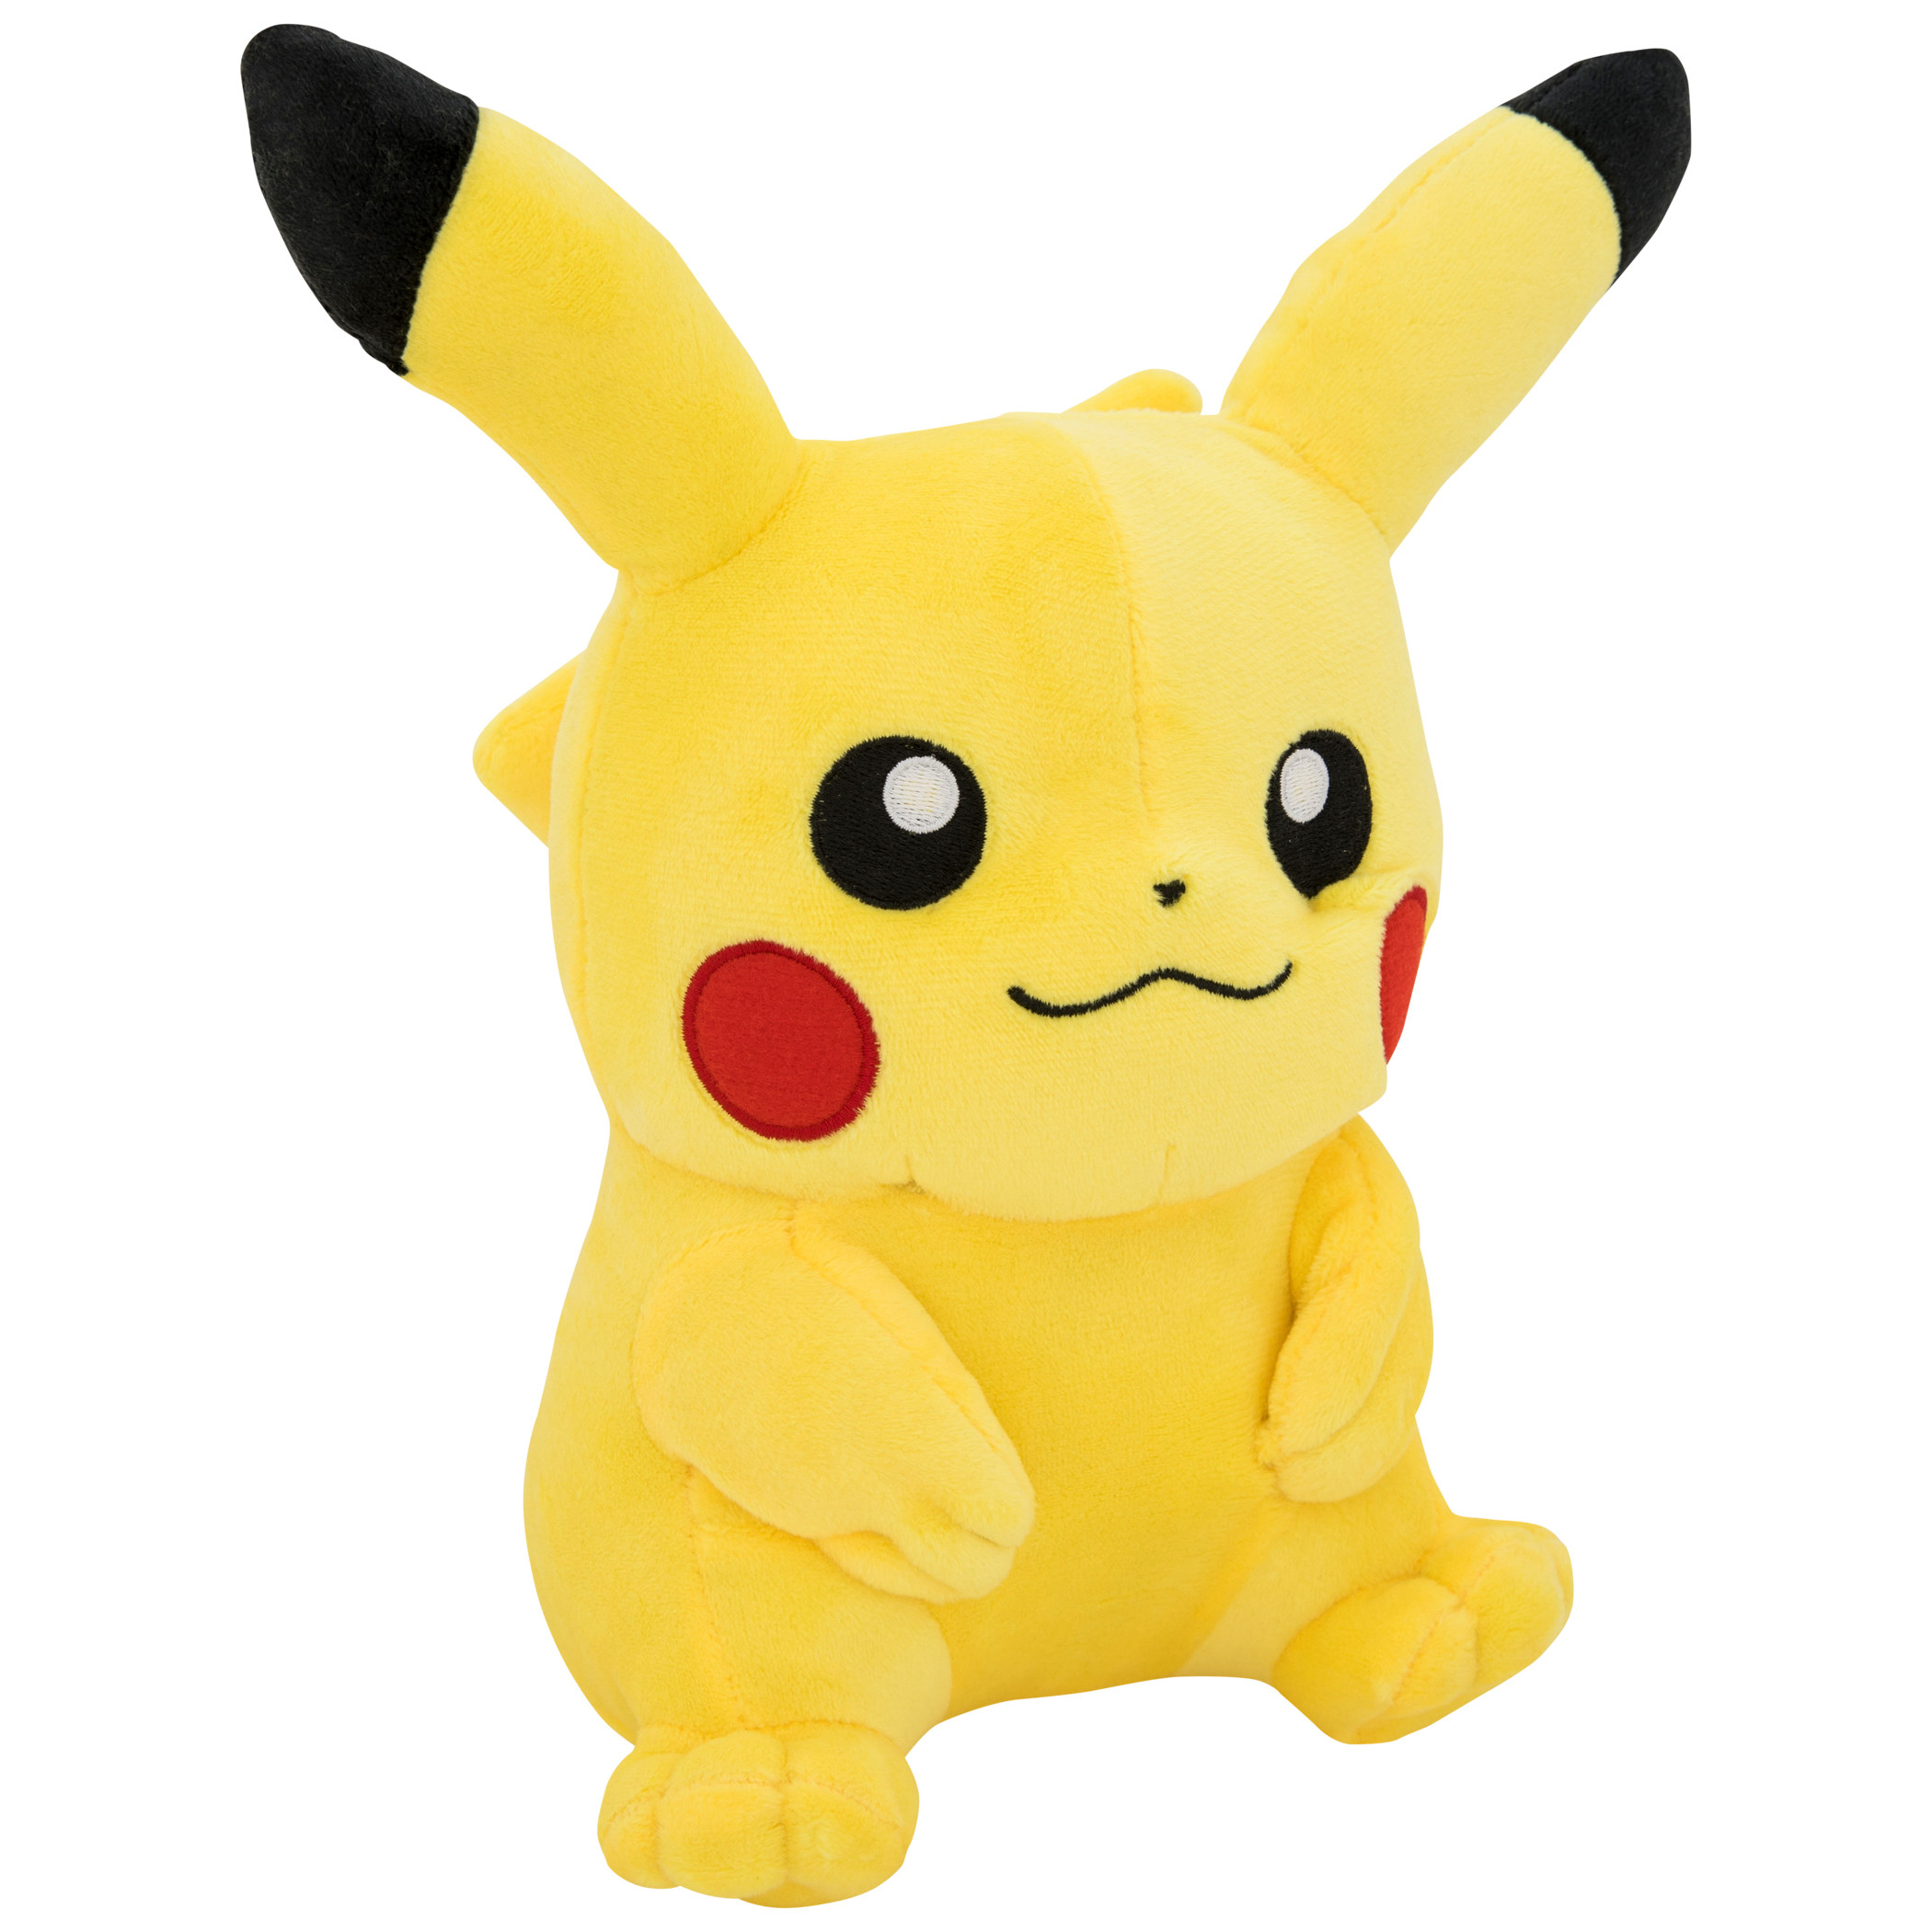 Pokemon Pikachu 9" Plush Toy